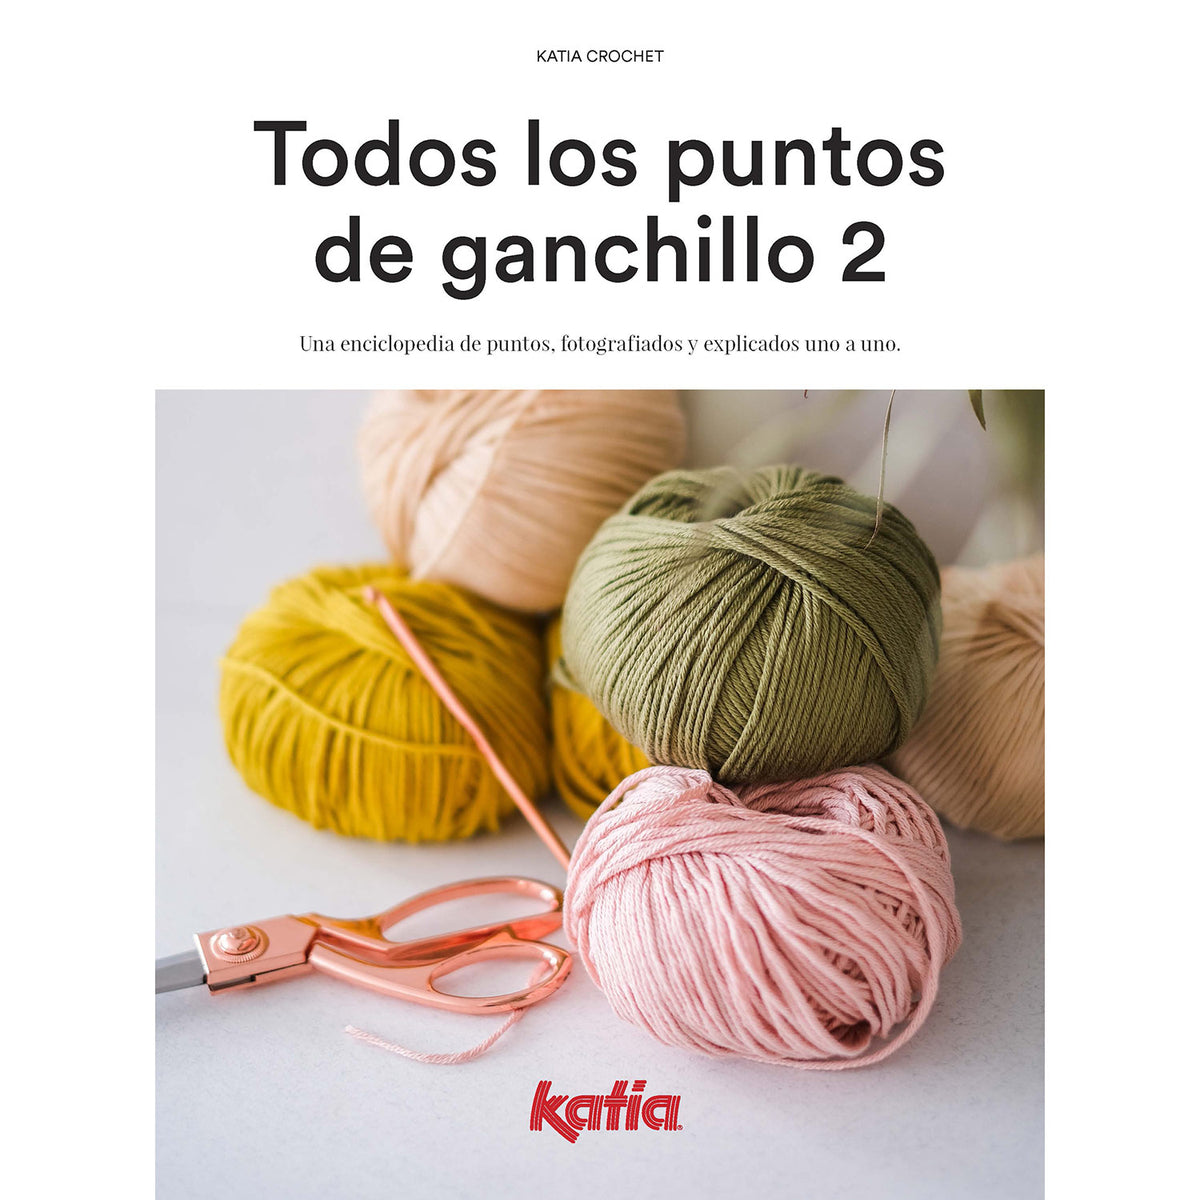 7 libros de Crochet y Ganchillo - Blog de Ganchillo